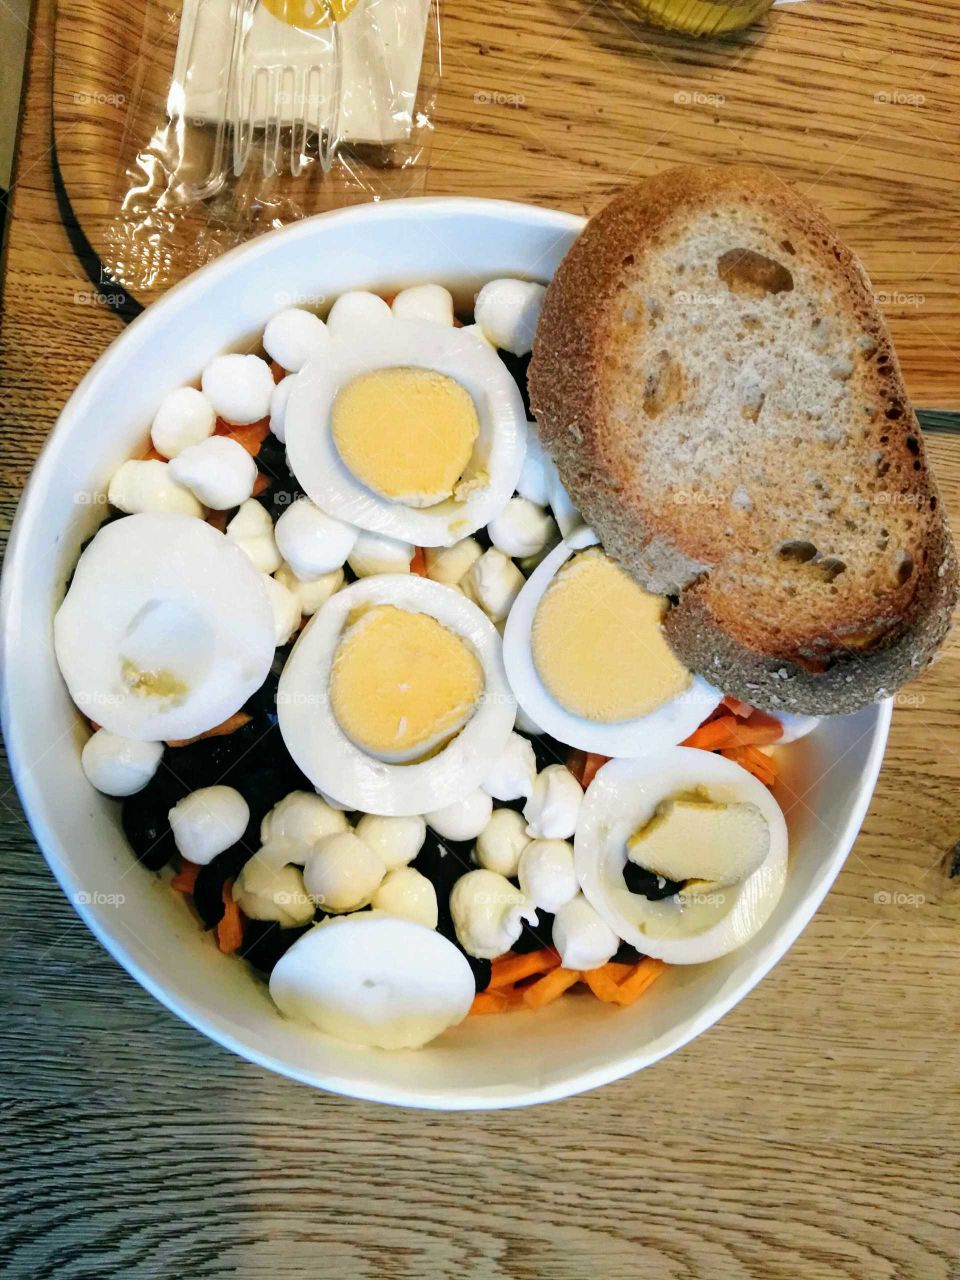 Eggs salad